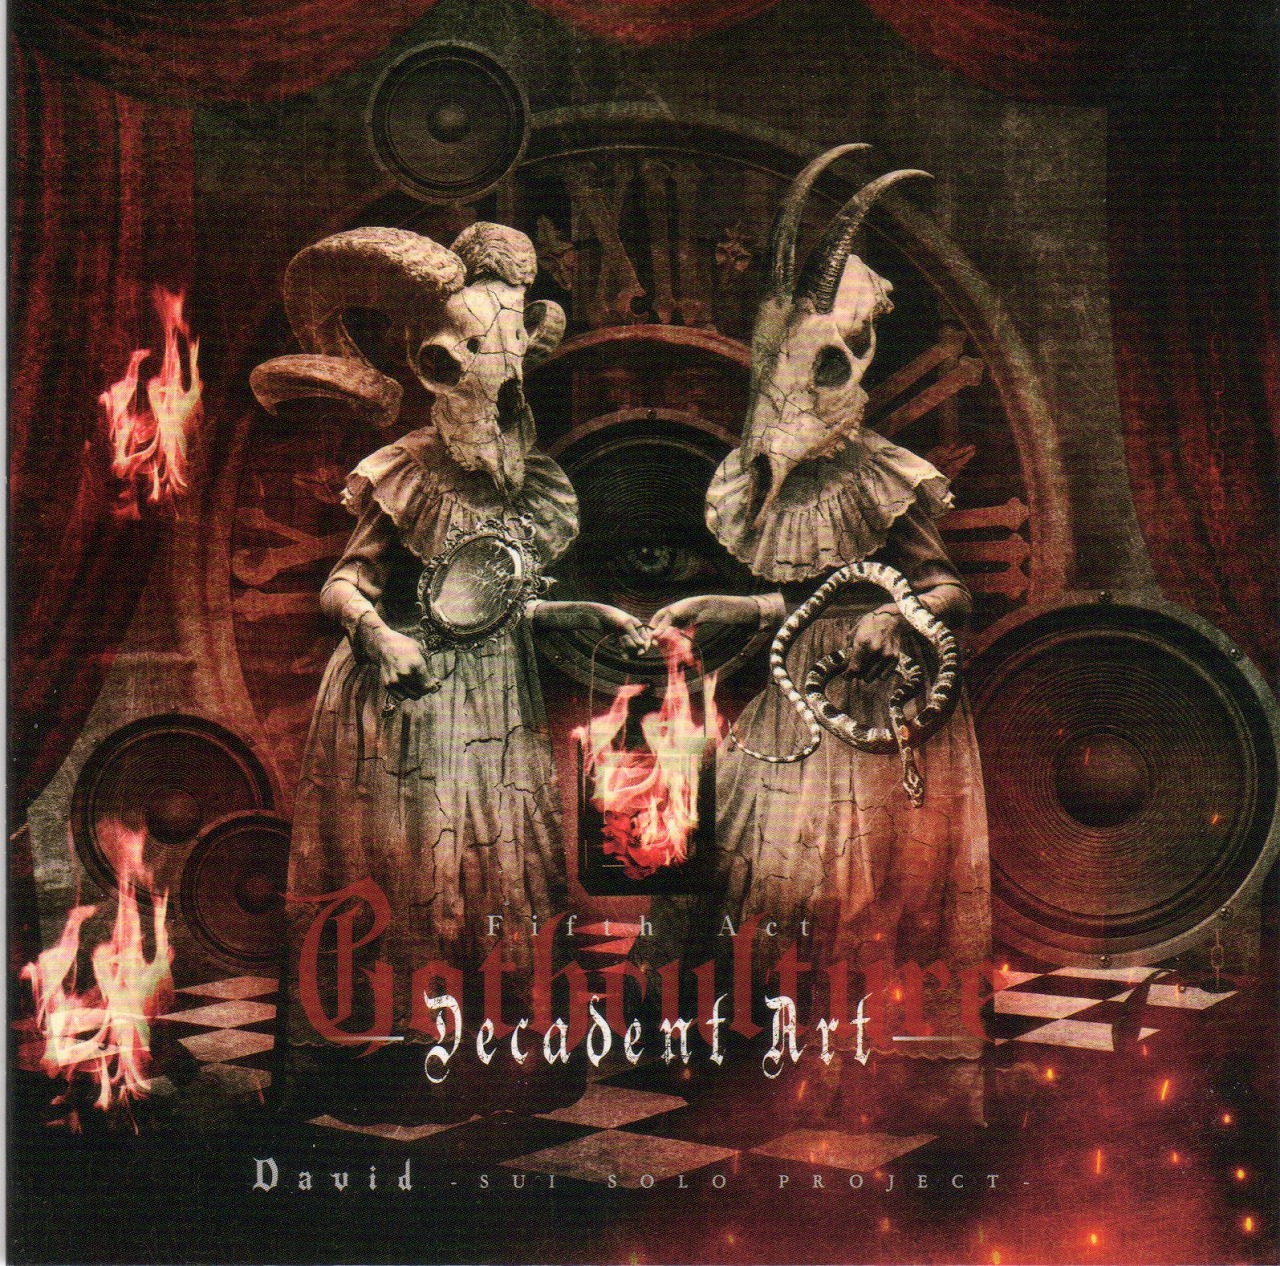 David の CD Gothculture -Decadent Art-